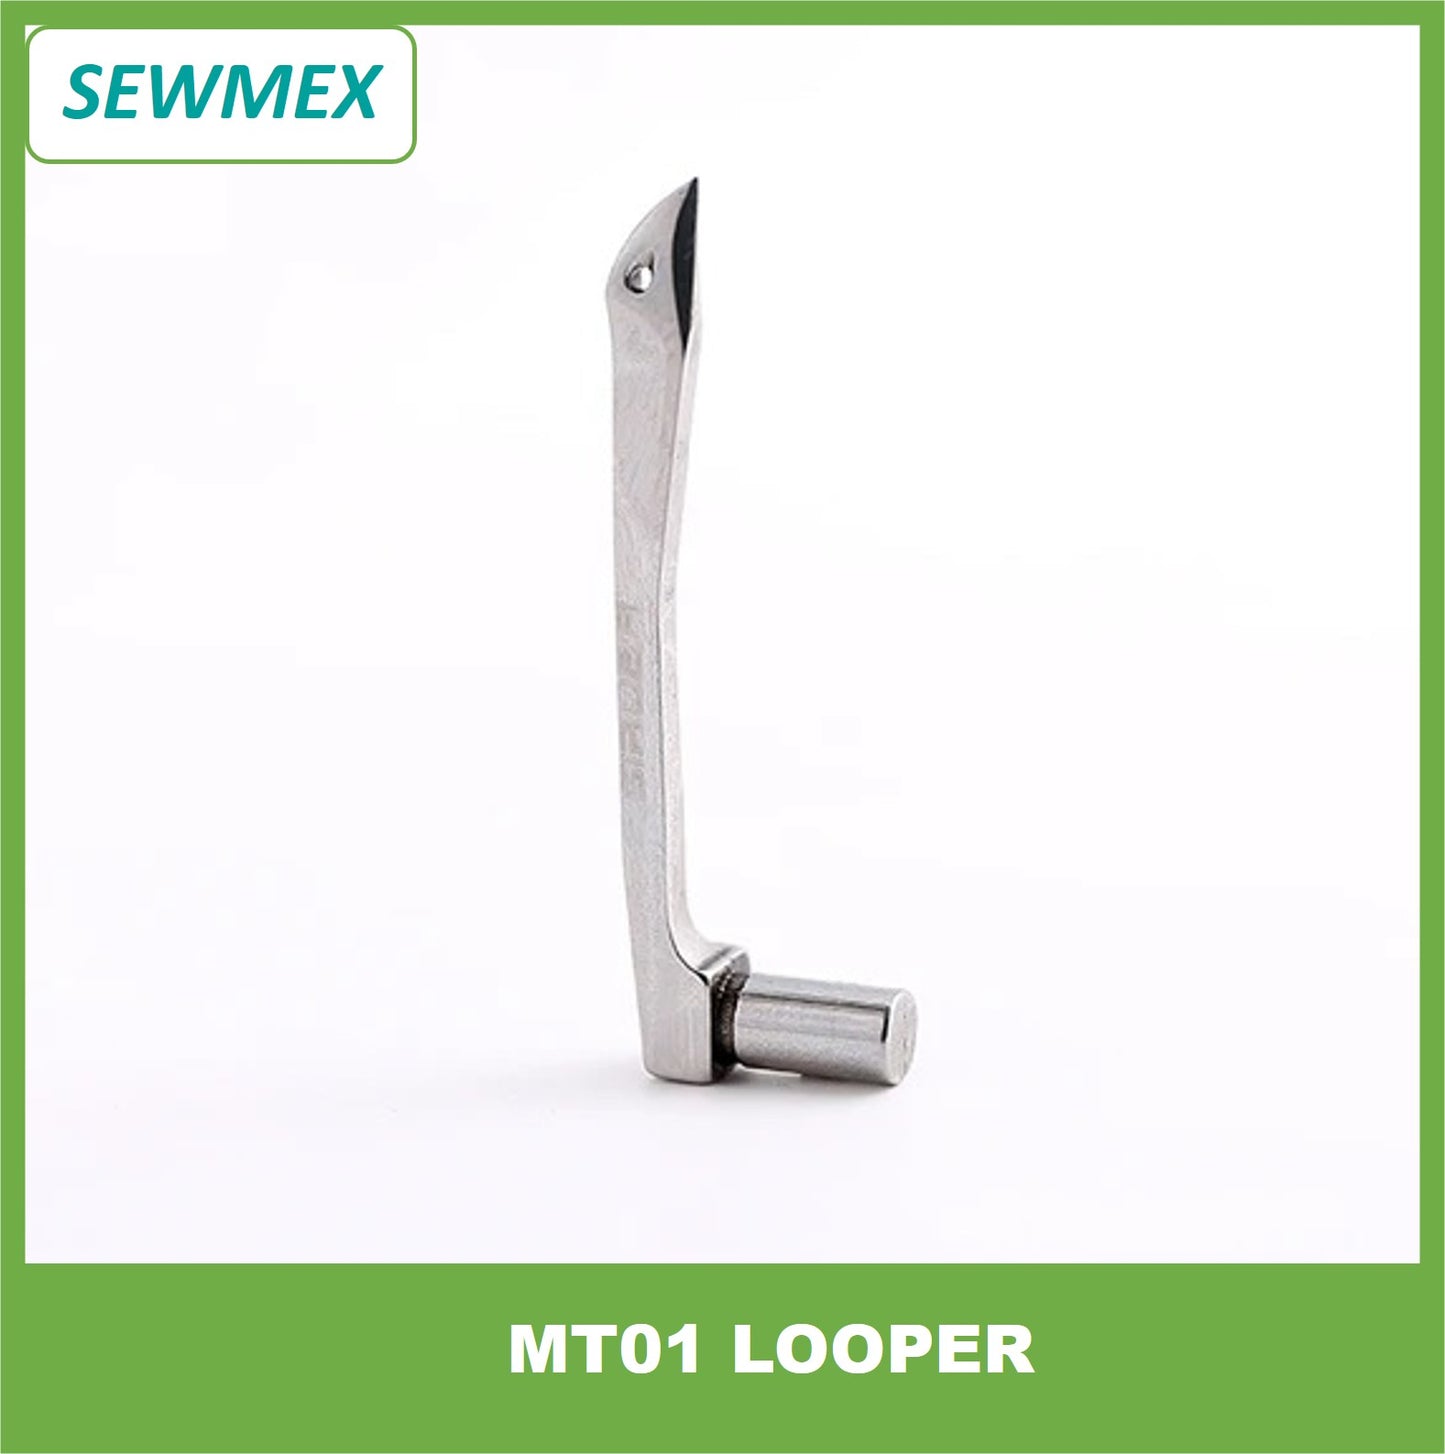 MT01 Looper